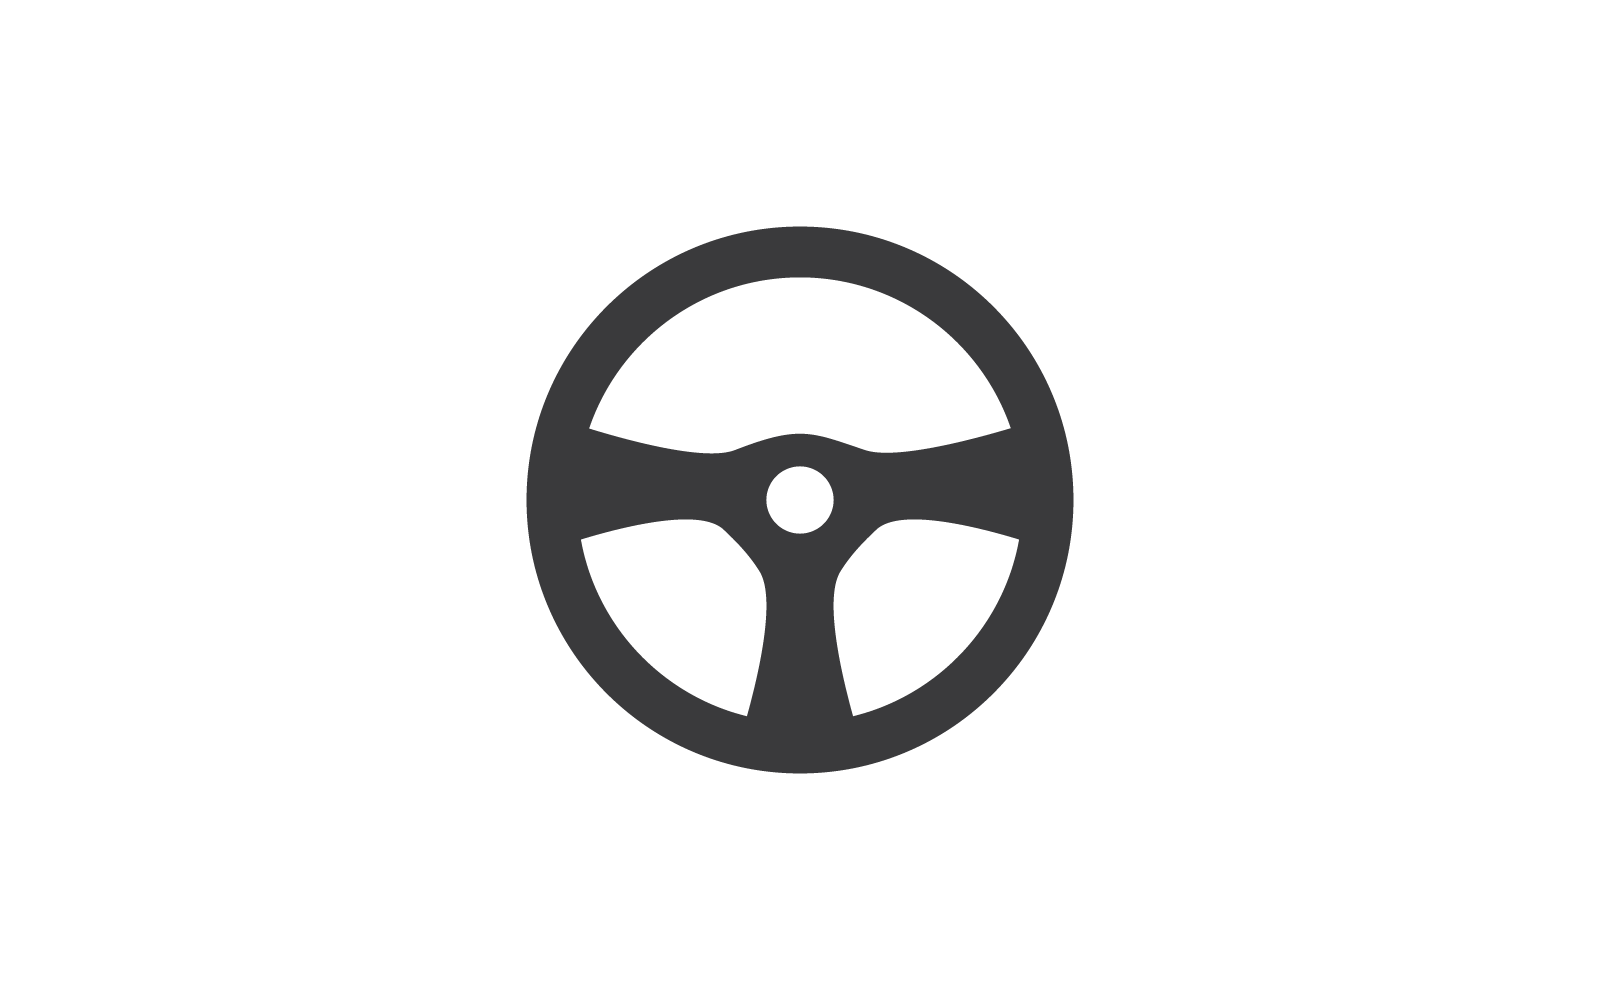 Szablon ilustracji wektora logo ikony kierownicy